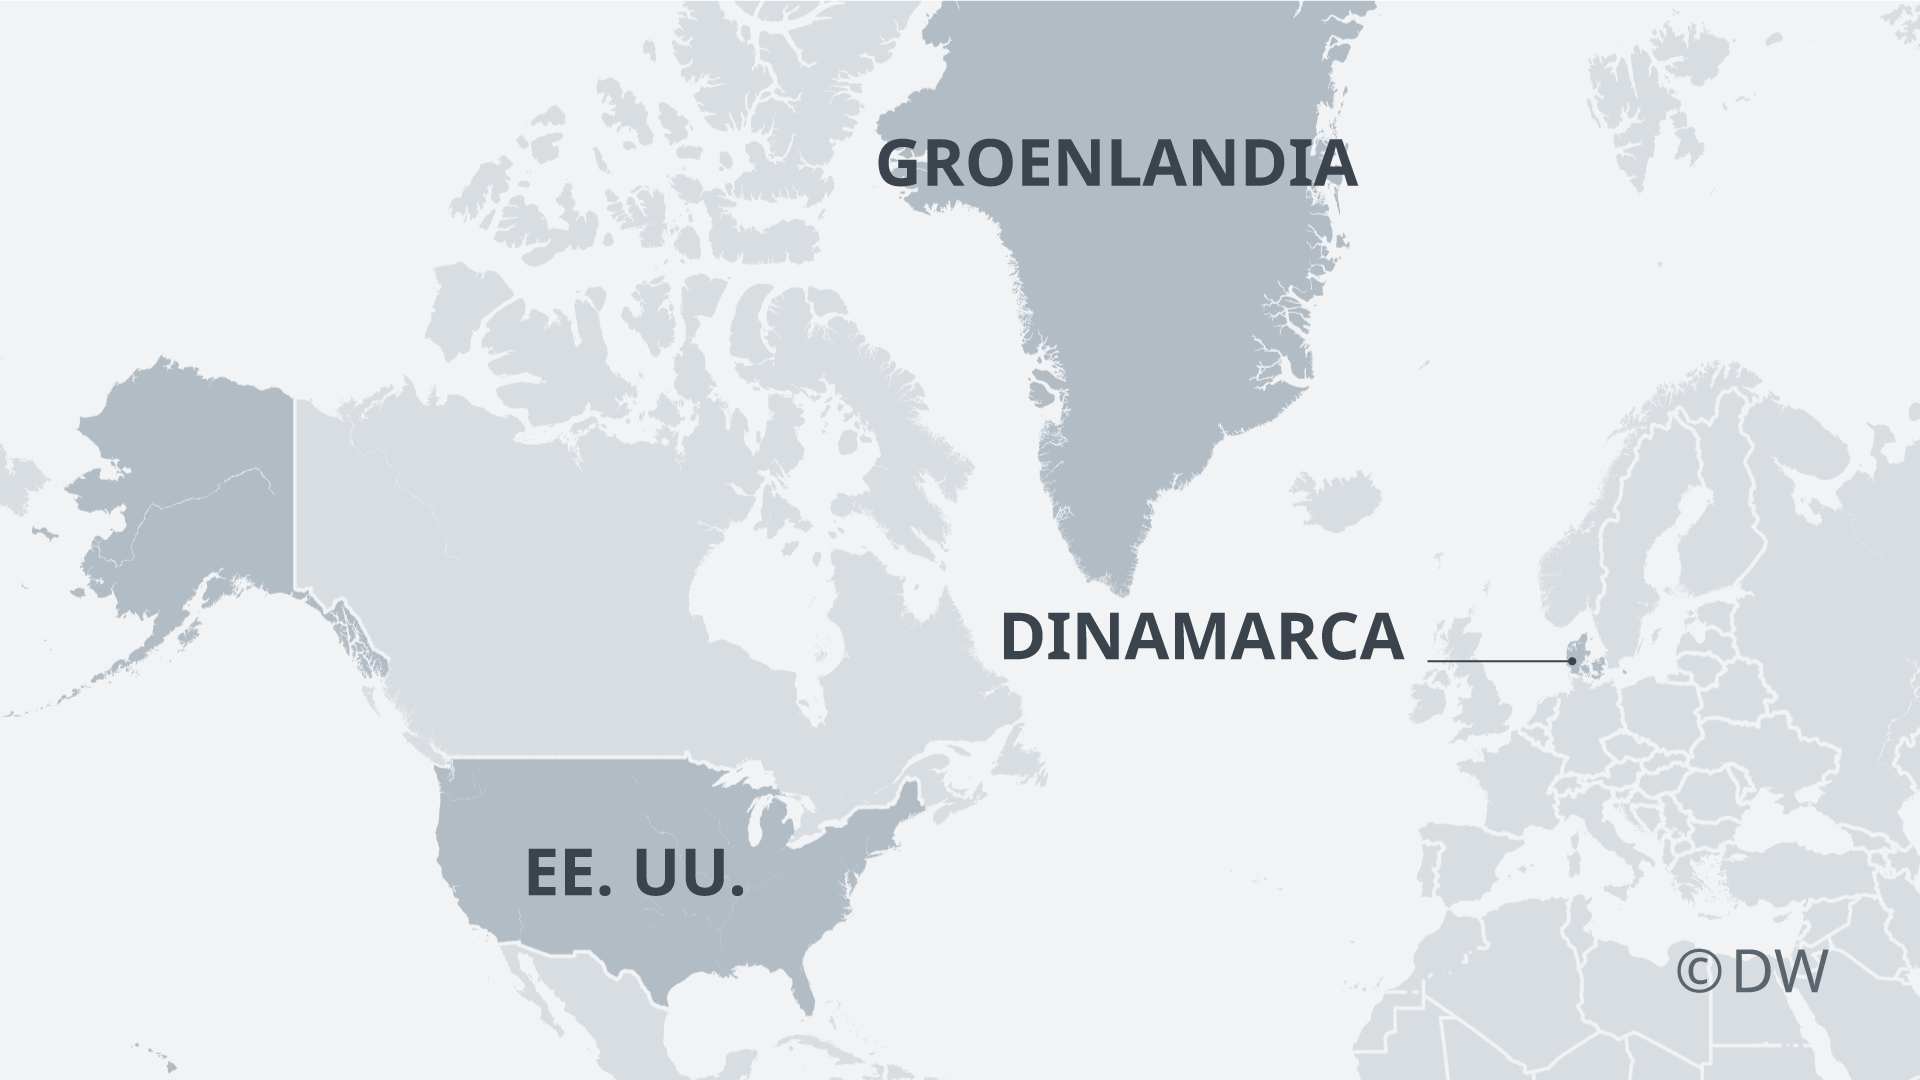 <strong>Groenlandia está ubicado en el continente americano pero le pertenece al país de Dinamarca. Imagen: DW</strong>   